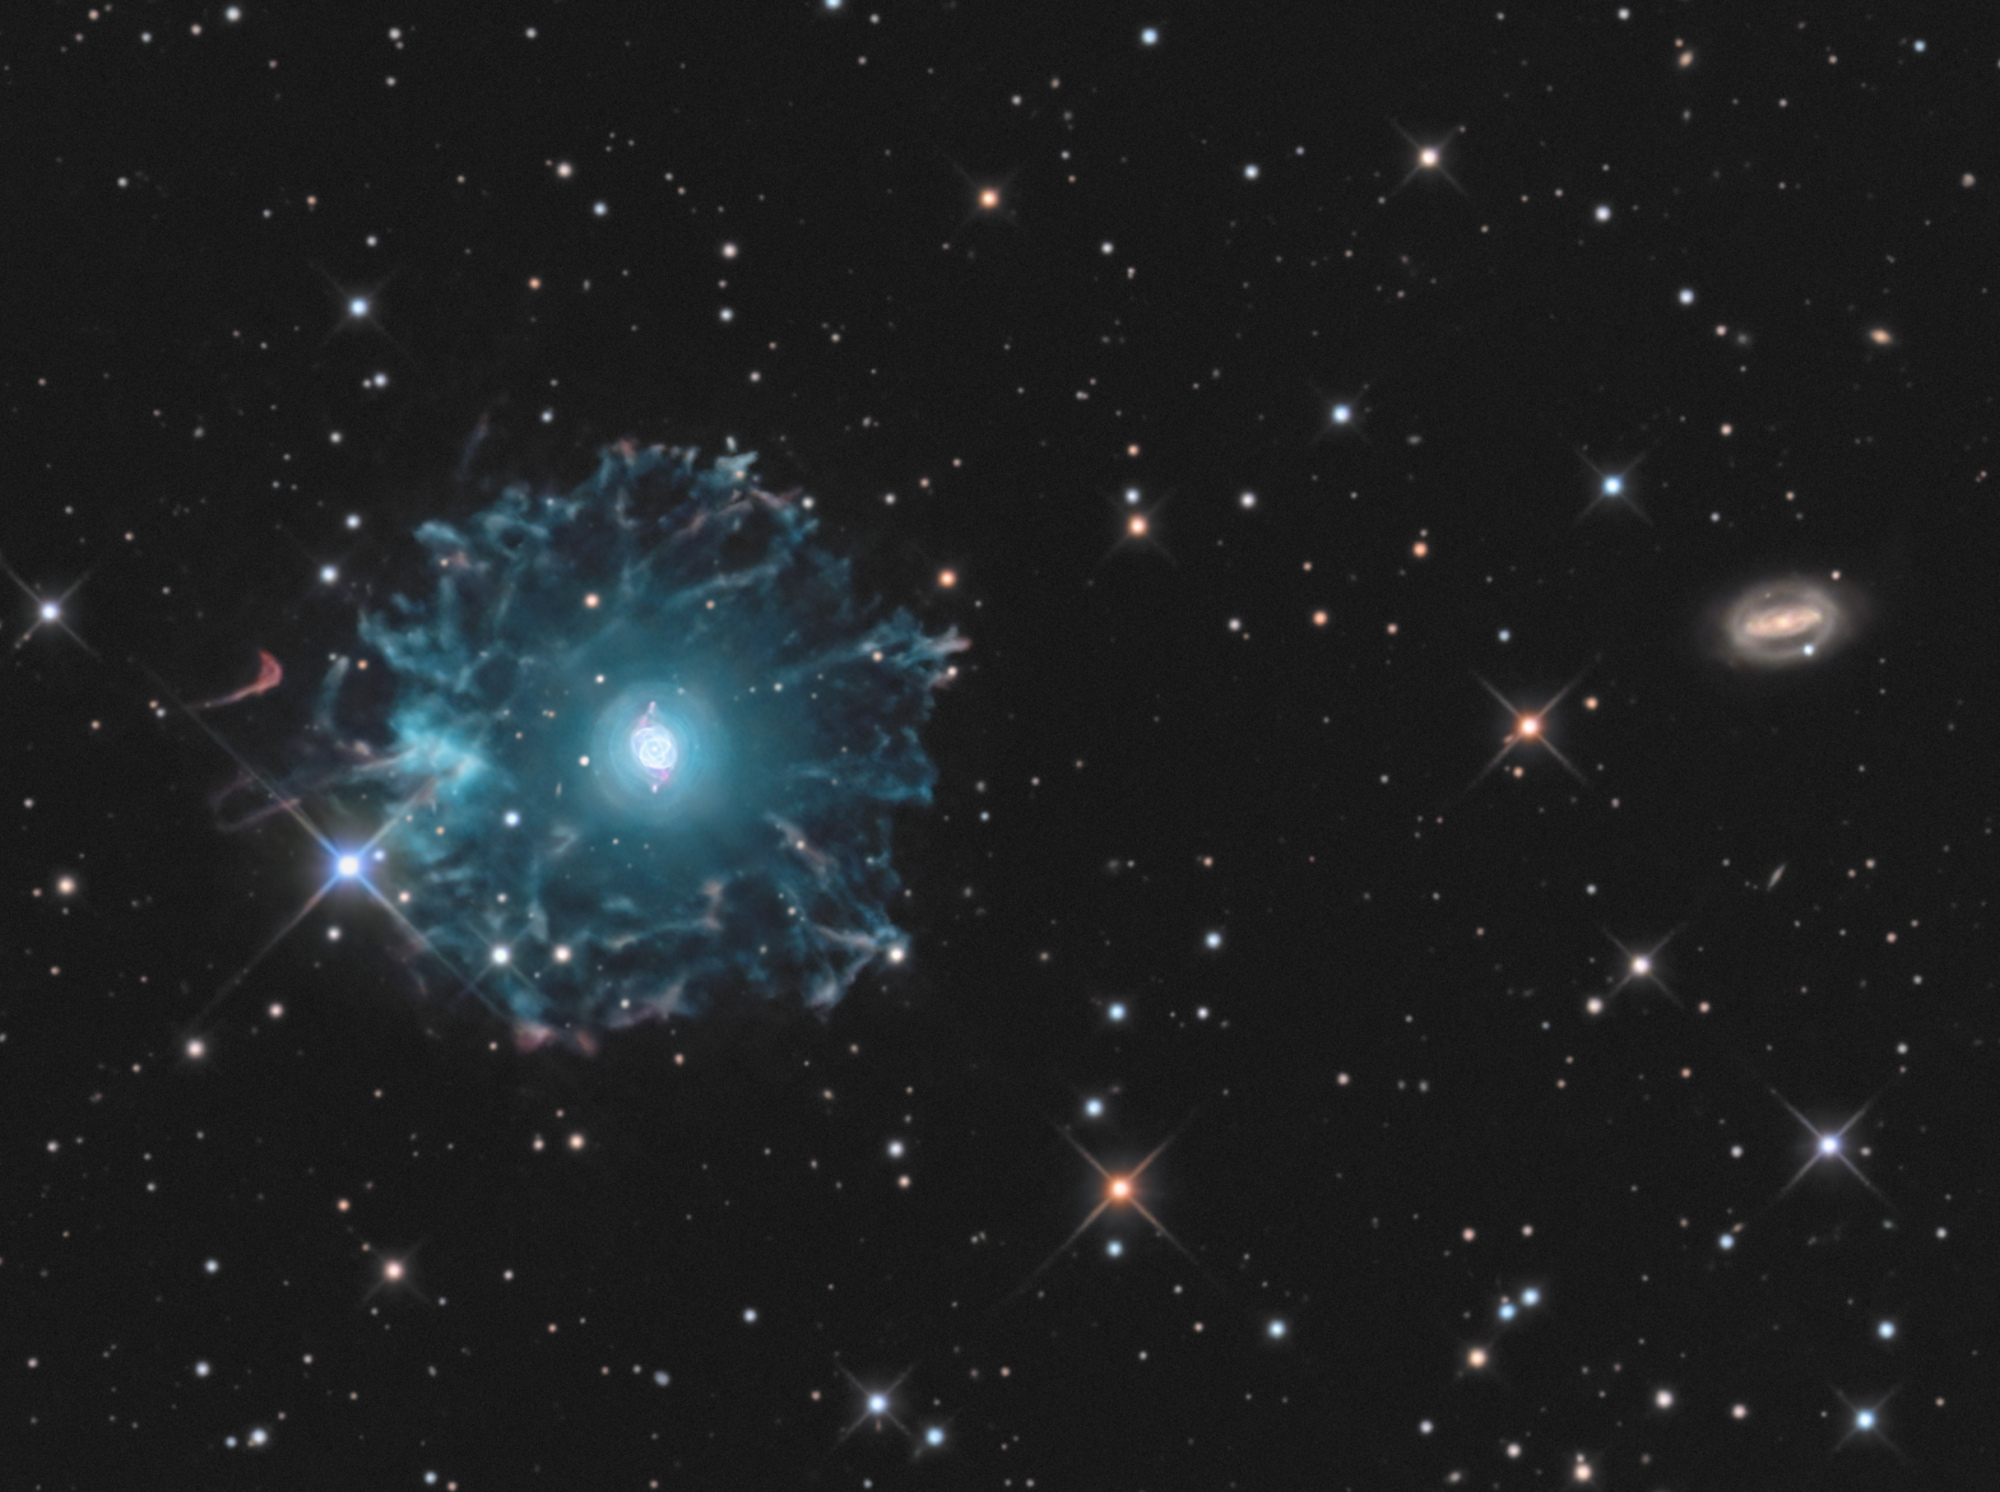 NGC-6543-LRVB-Final1.thumb.jpg.c5a1e60a07a6f74d71e5980d0b5759b0.jpg